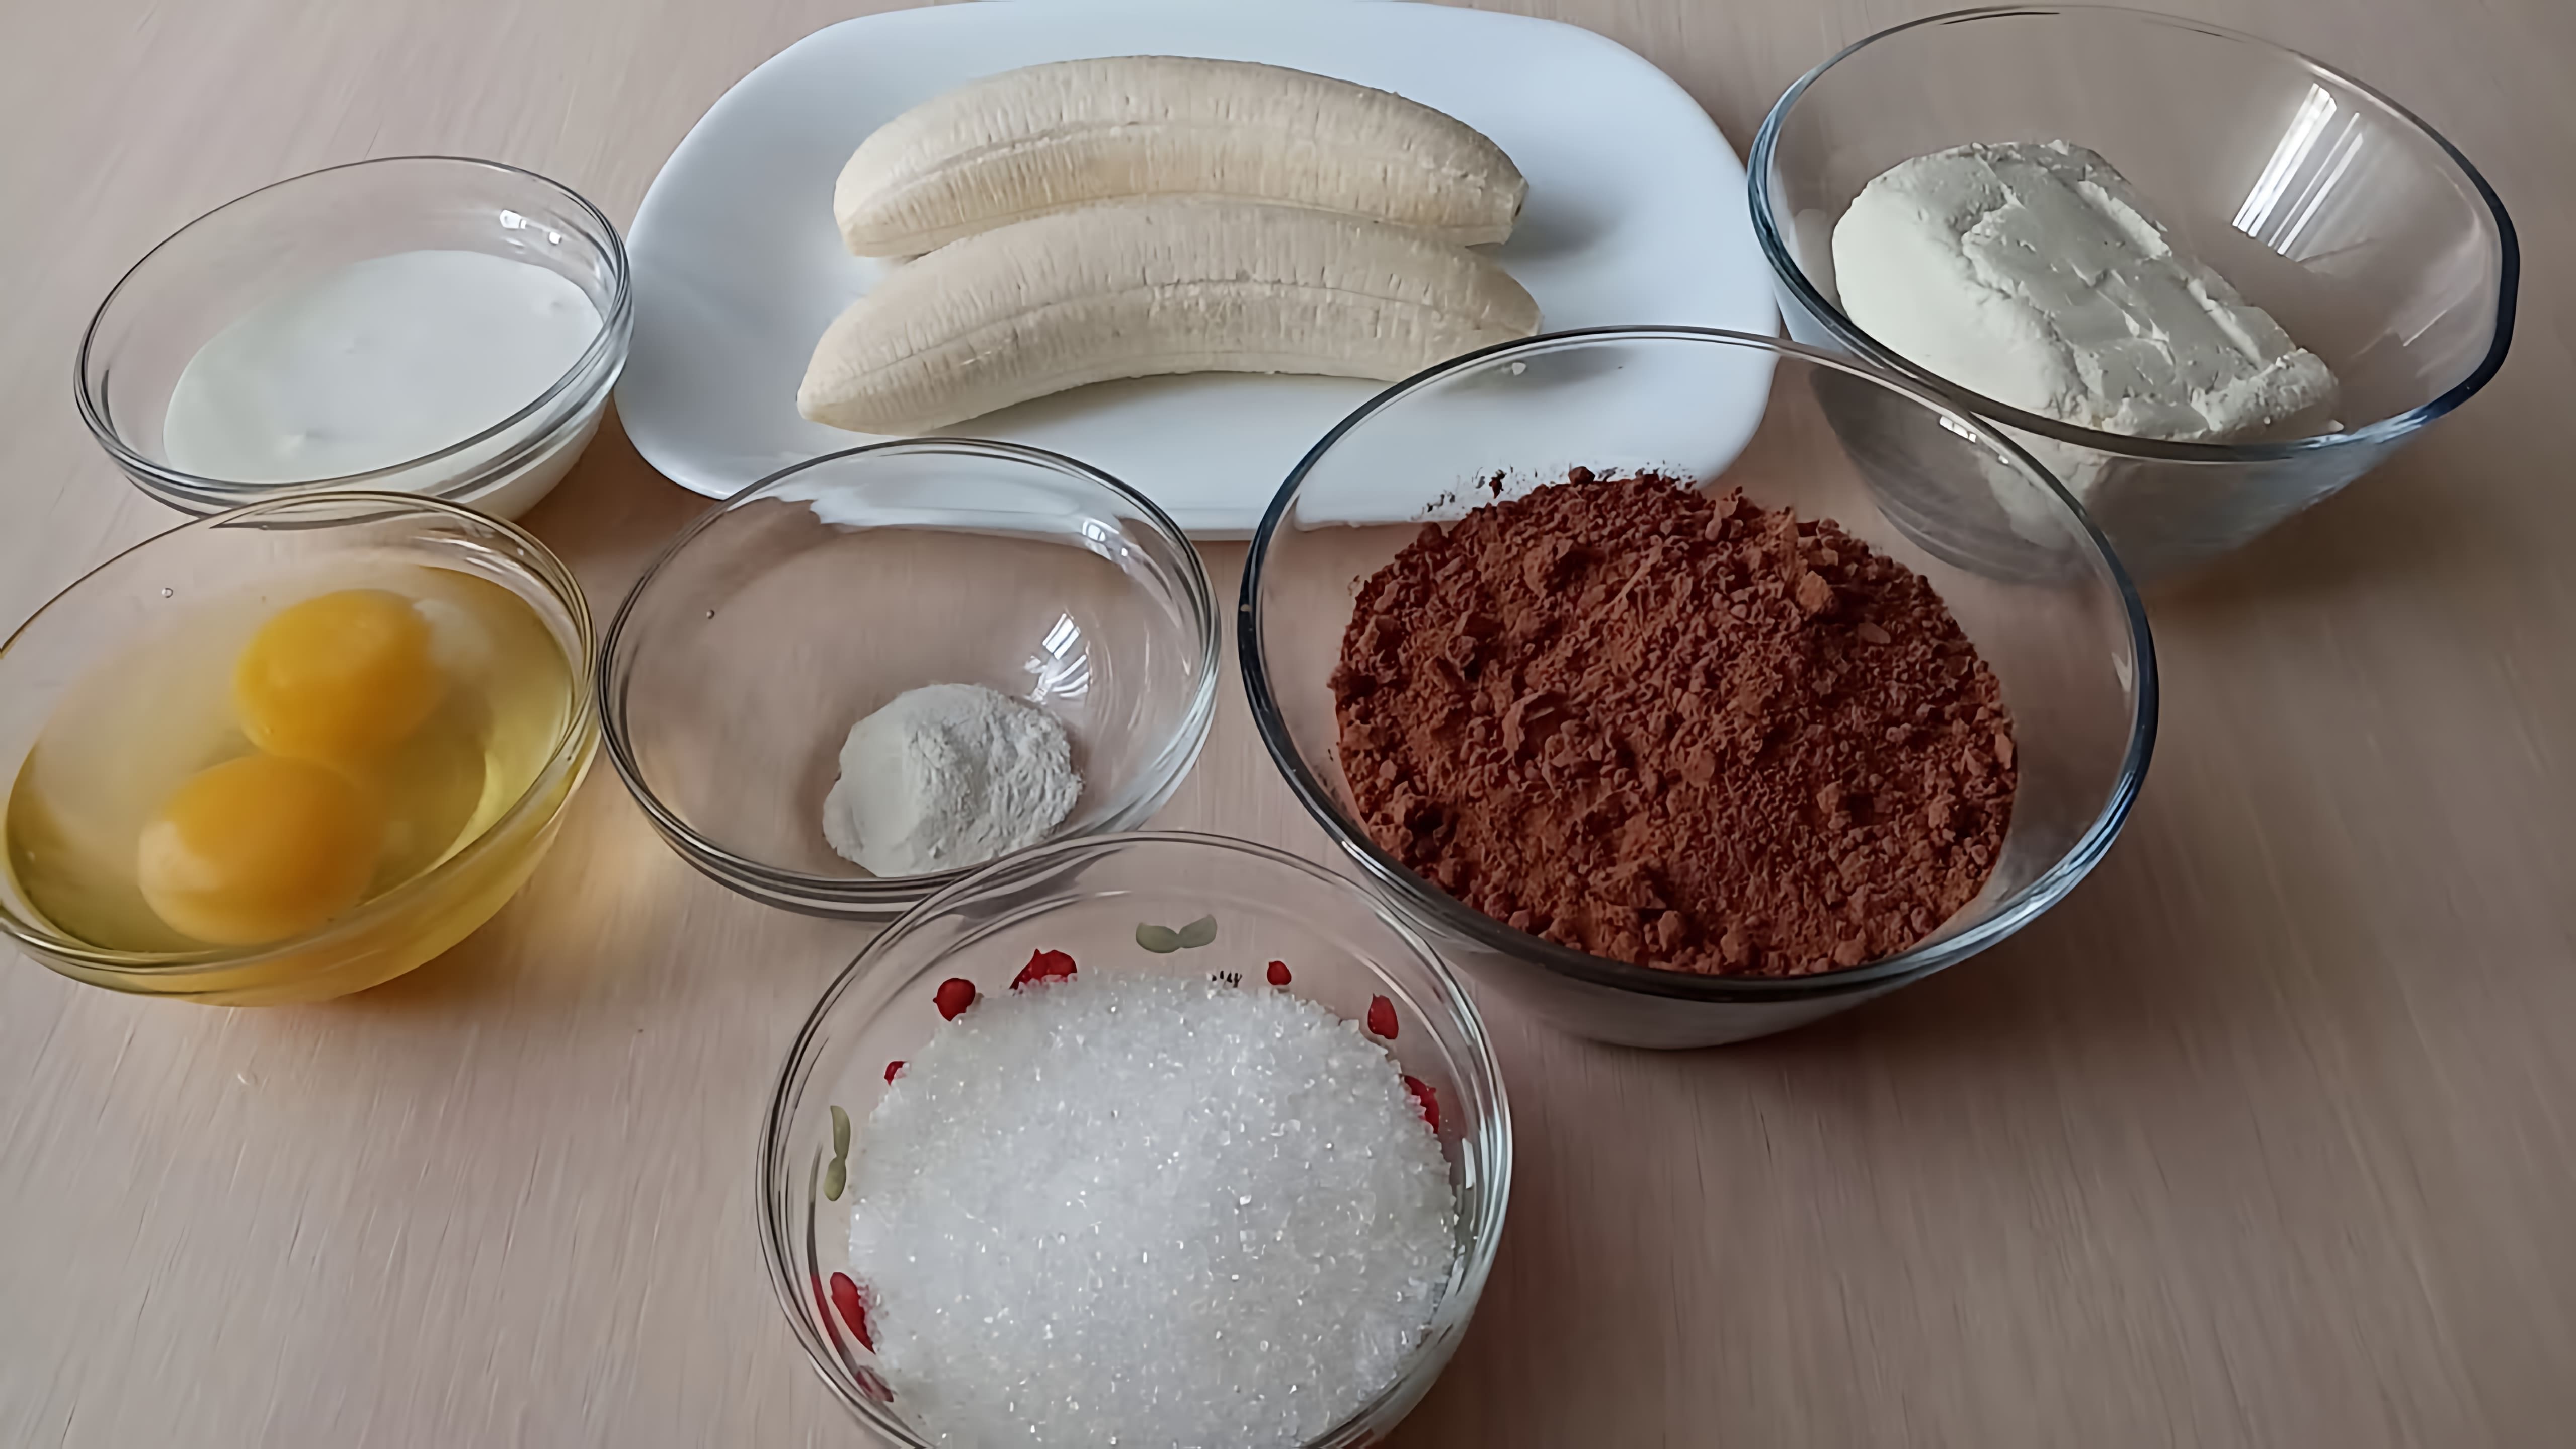 ингредиенты: -банан-2 шт. -яйца-2 шт. -какао-6 столовых ложек -разрыхлитель-1 чайная ложка -творог-80 гр. -сахар-50 гр. 